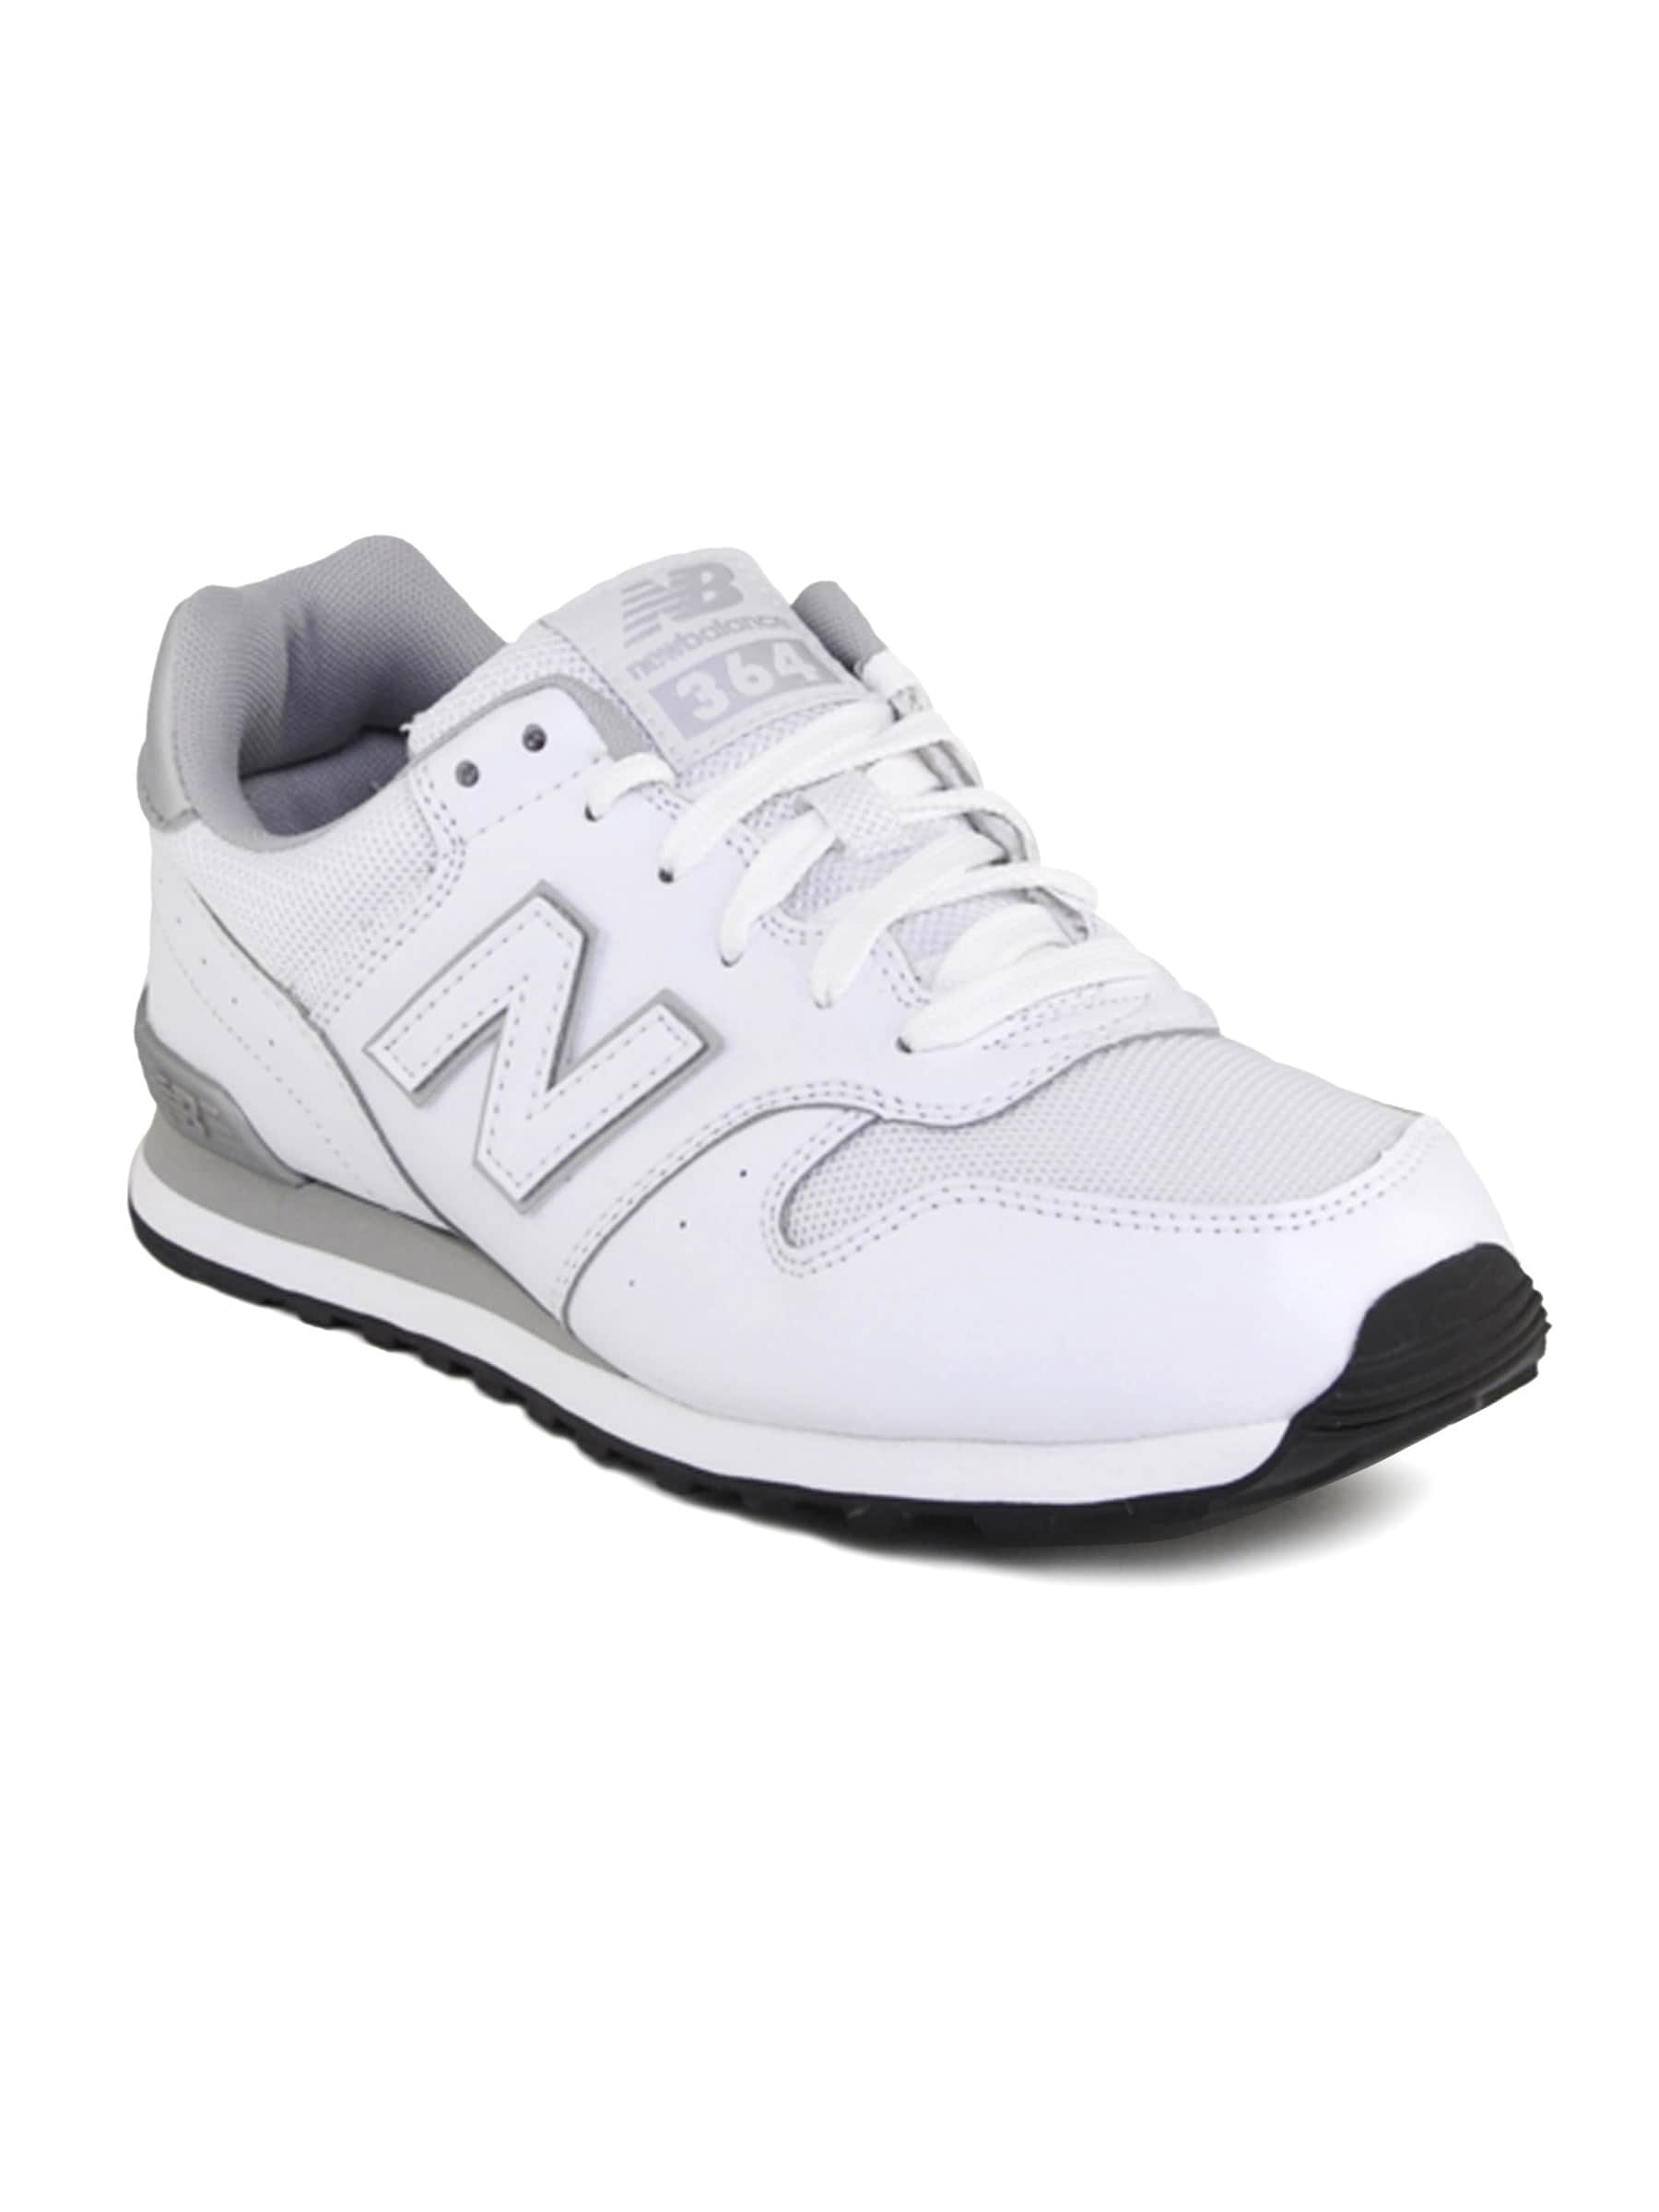 New Balance M364 Men Others Xtraining White Sports Shoes